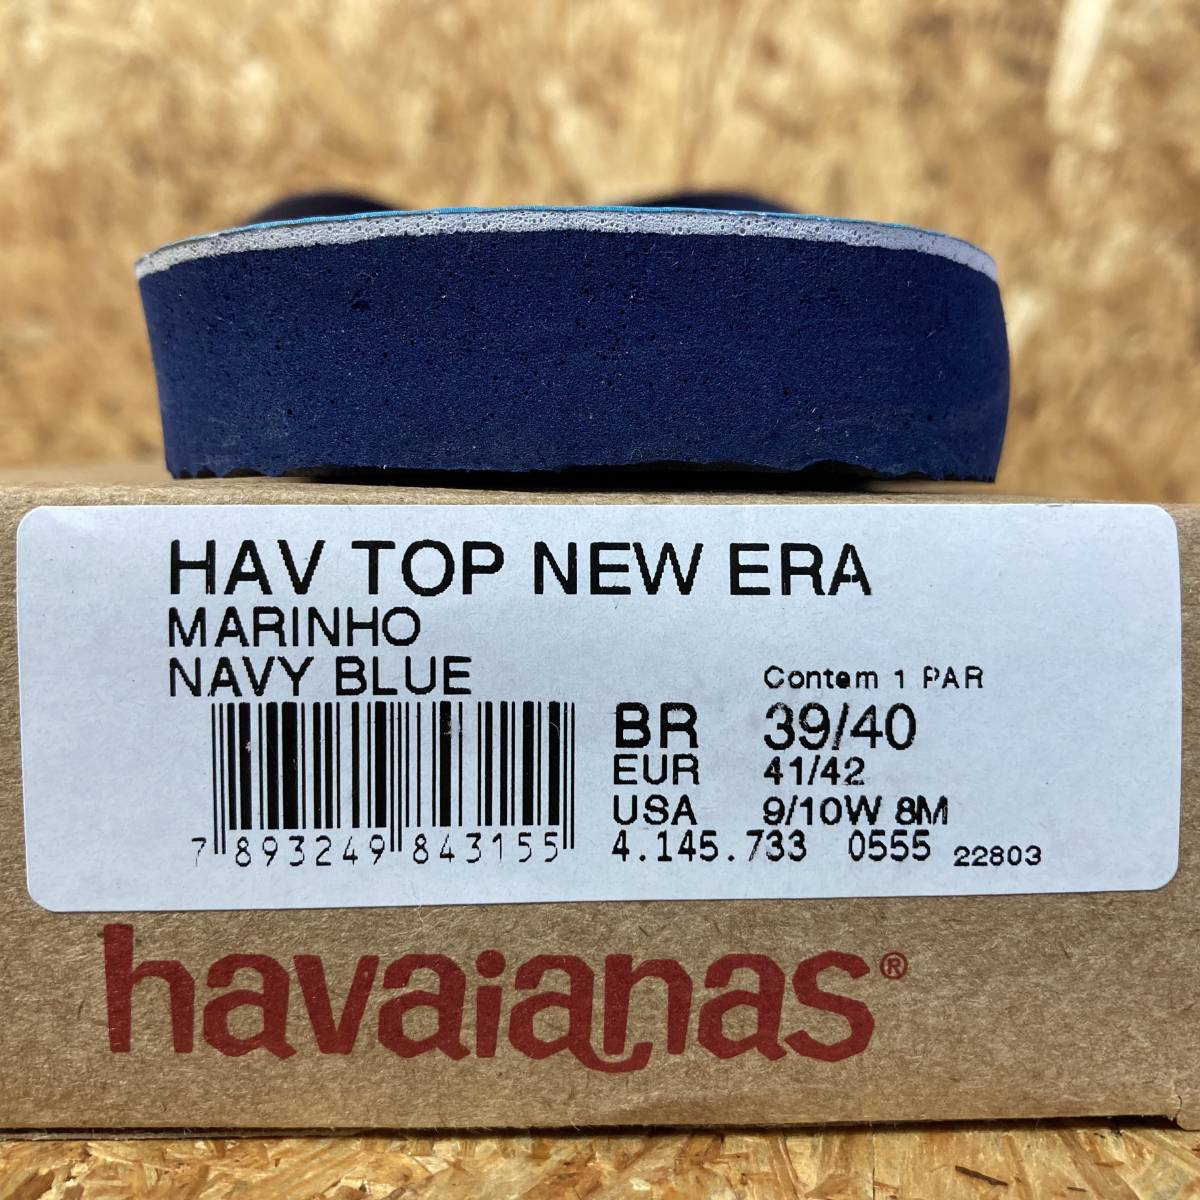 NEW ERA havaianas ビーチサンダル US8 26cm US9 27cm コラボ 別注 限定 ニュー エラ ハワイアナス 100周年 100th 紙袋の画像5